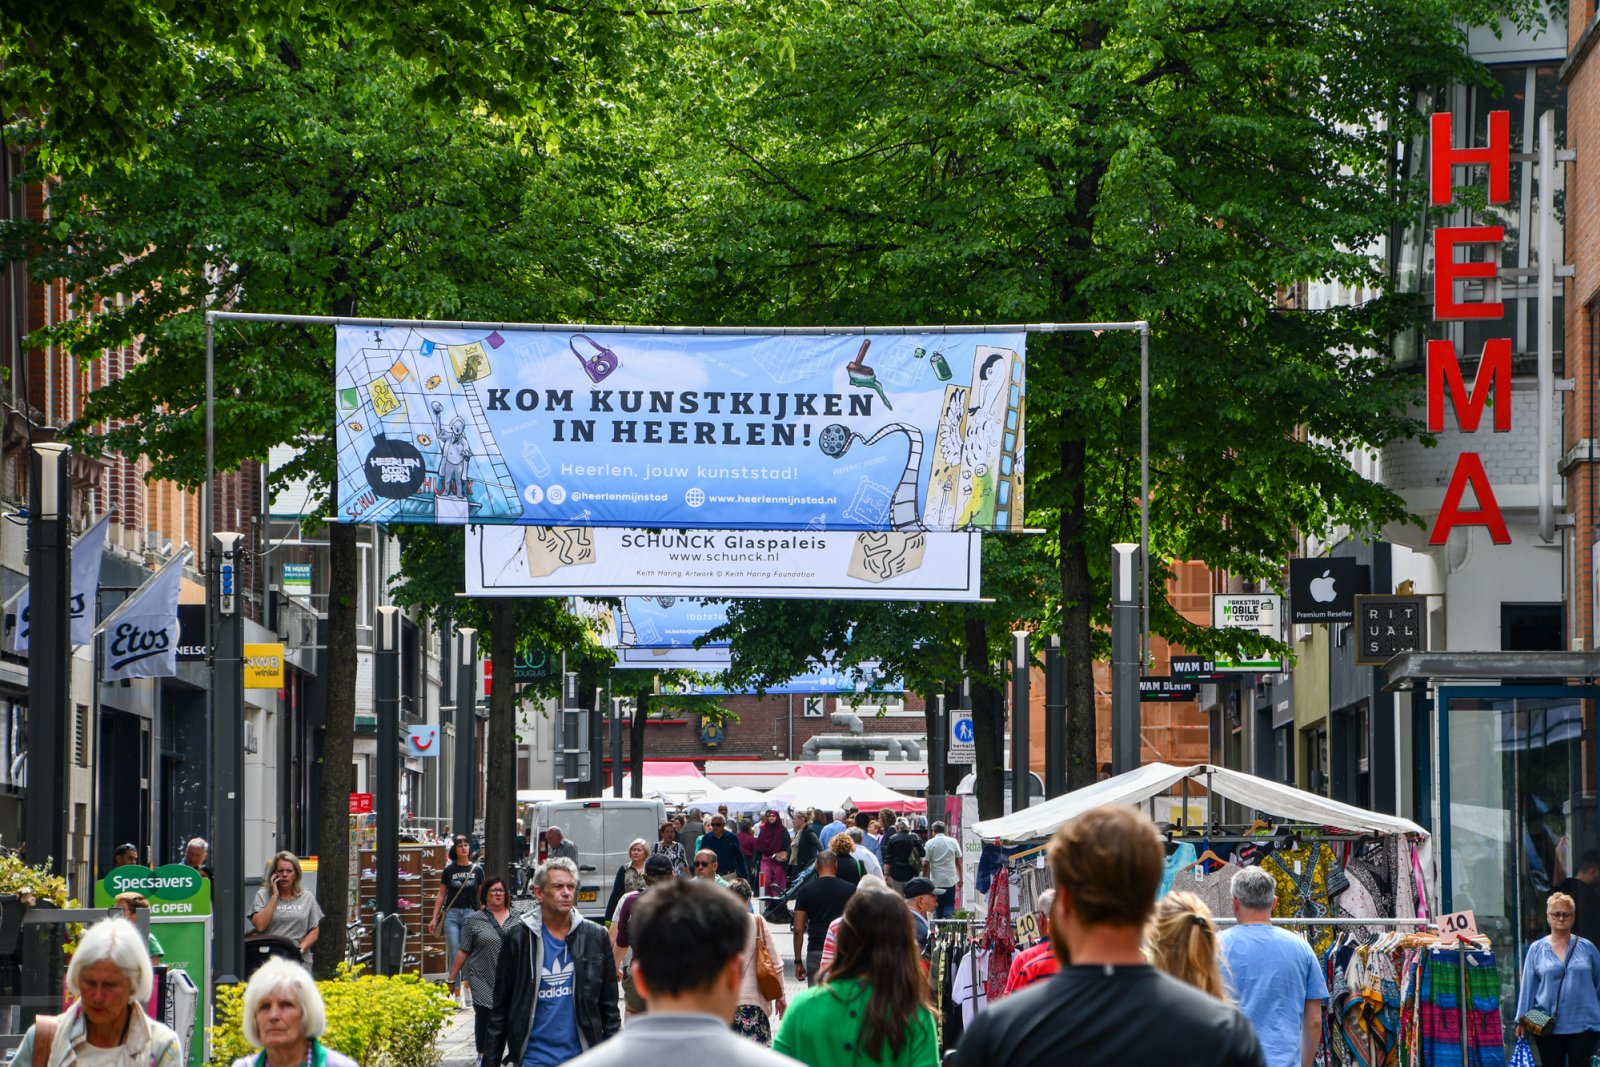 Kunstkijken in Heerlen banner